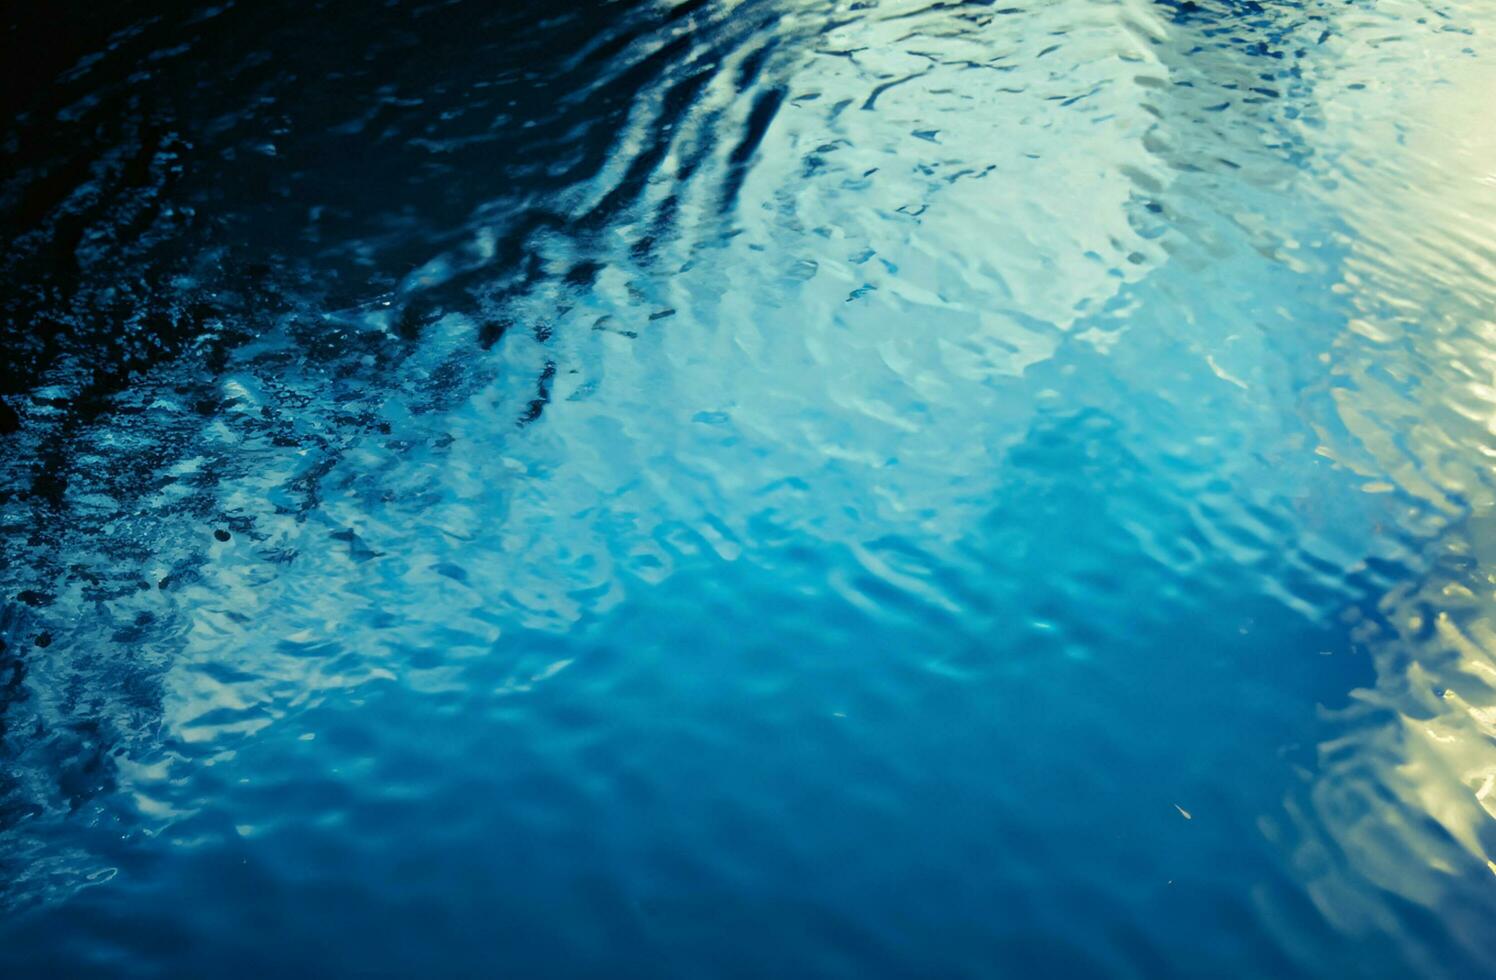 fond de surface de leau bleue photo